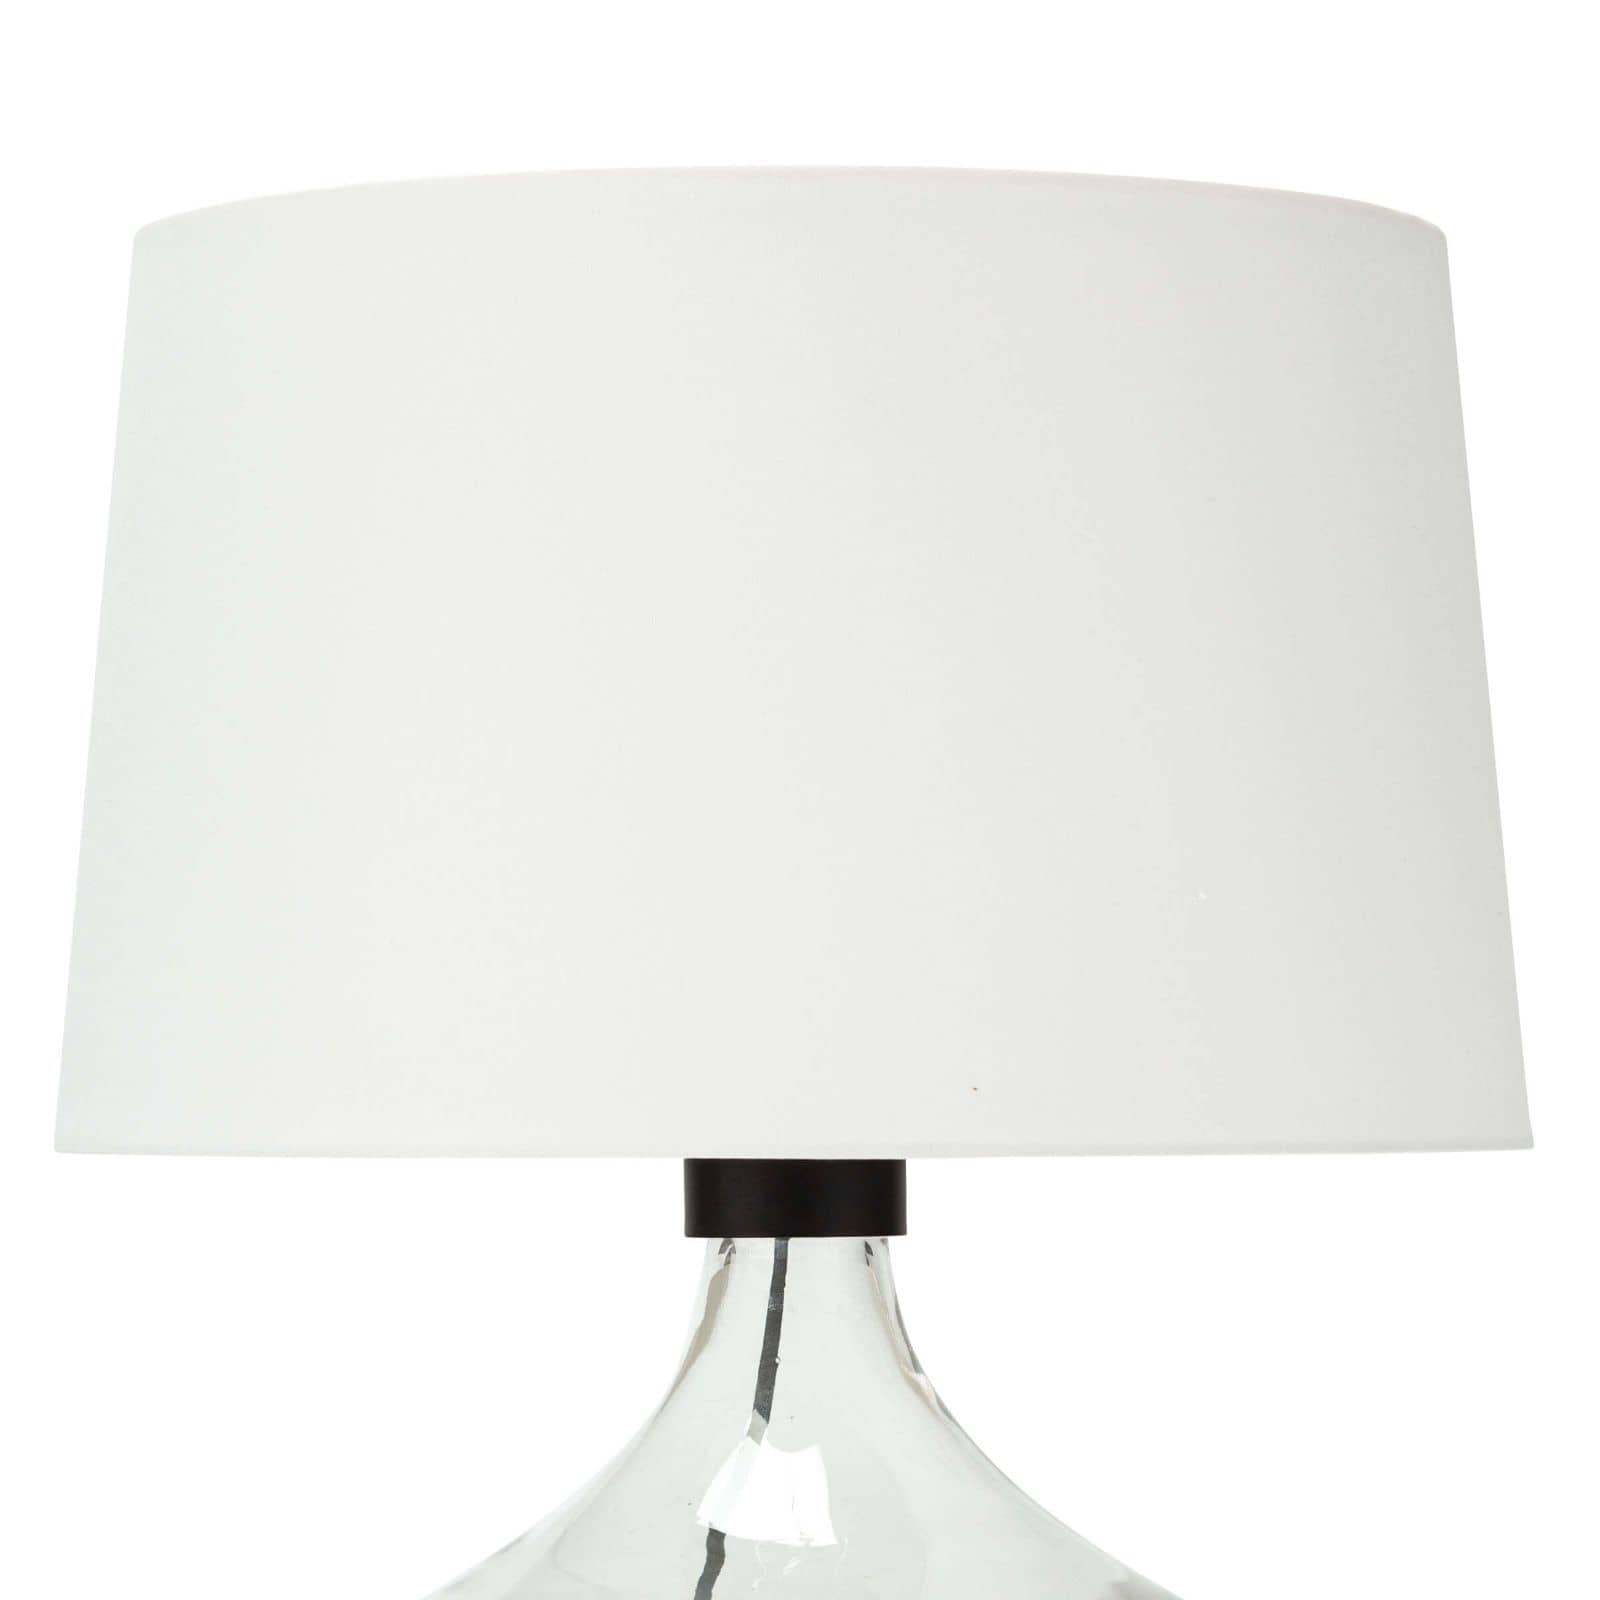 Demi John Table Lamp Large by Coastal Living